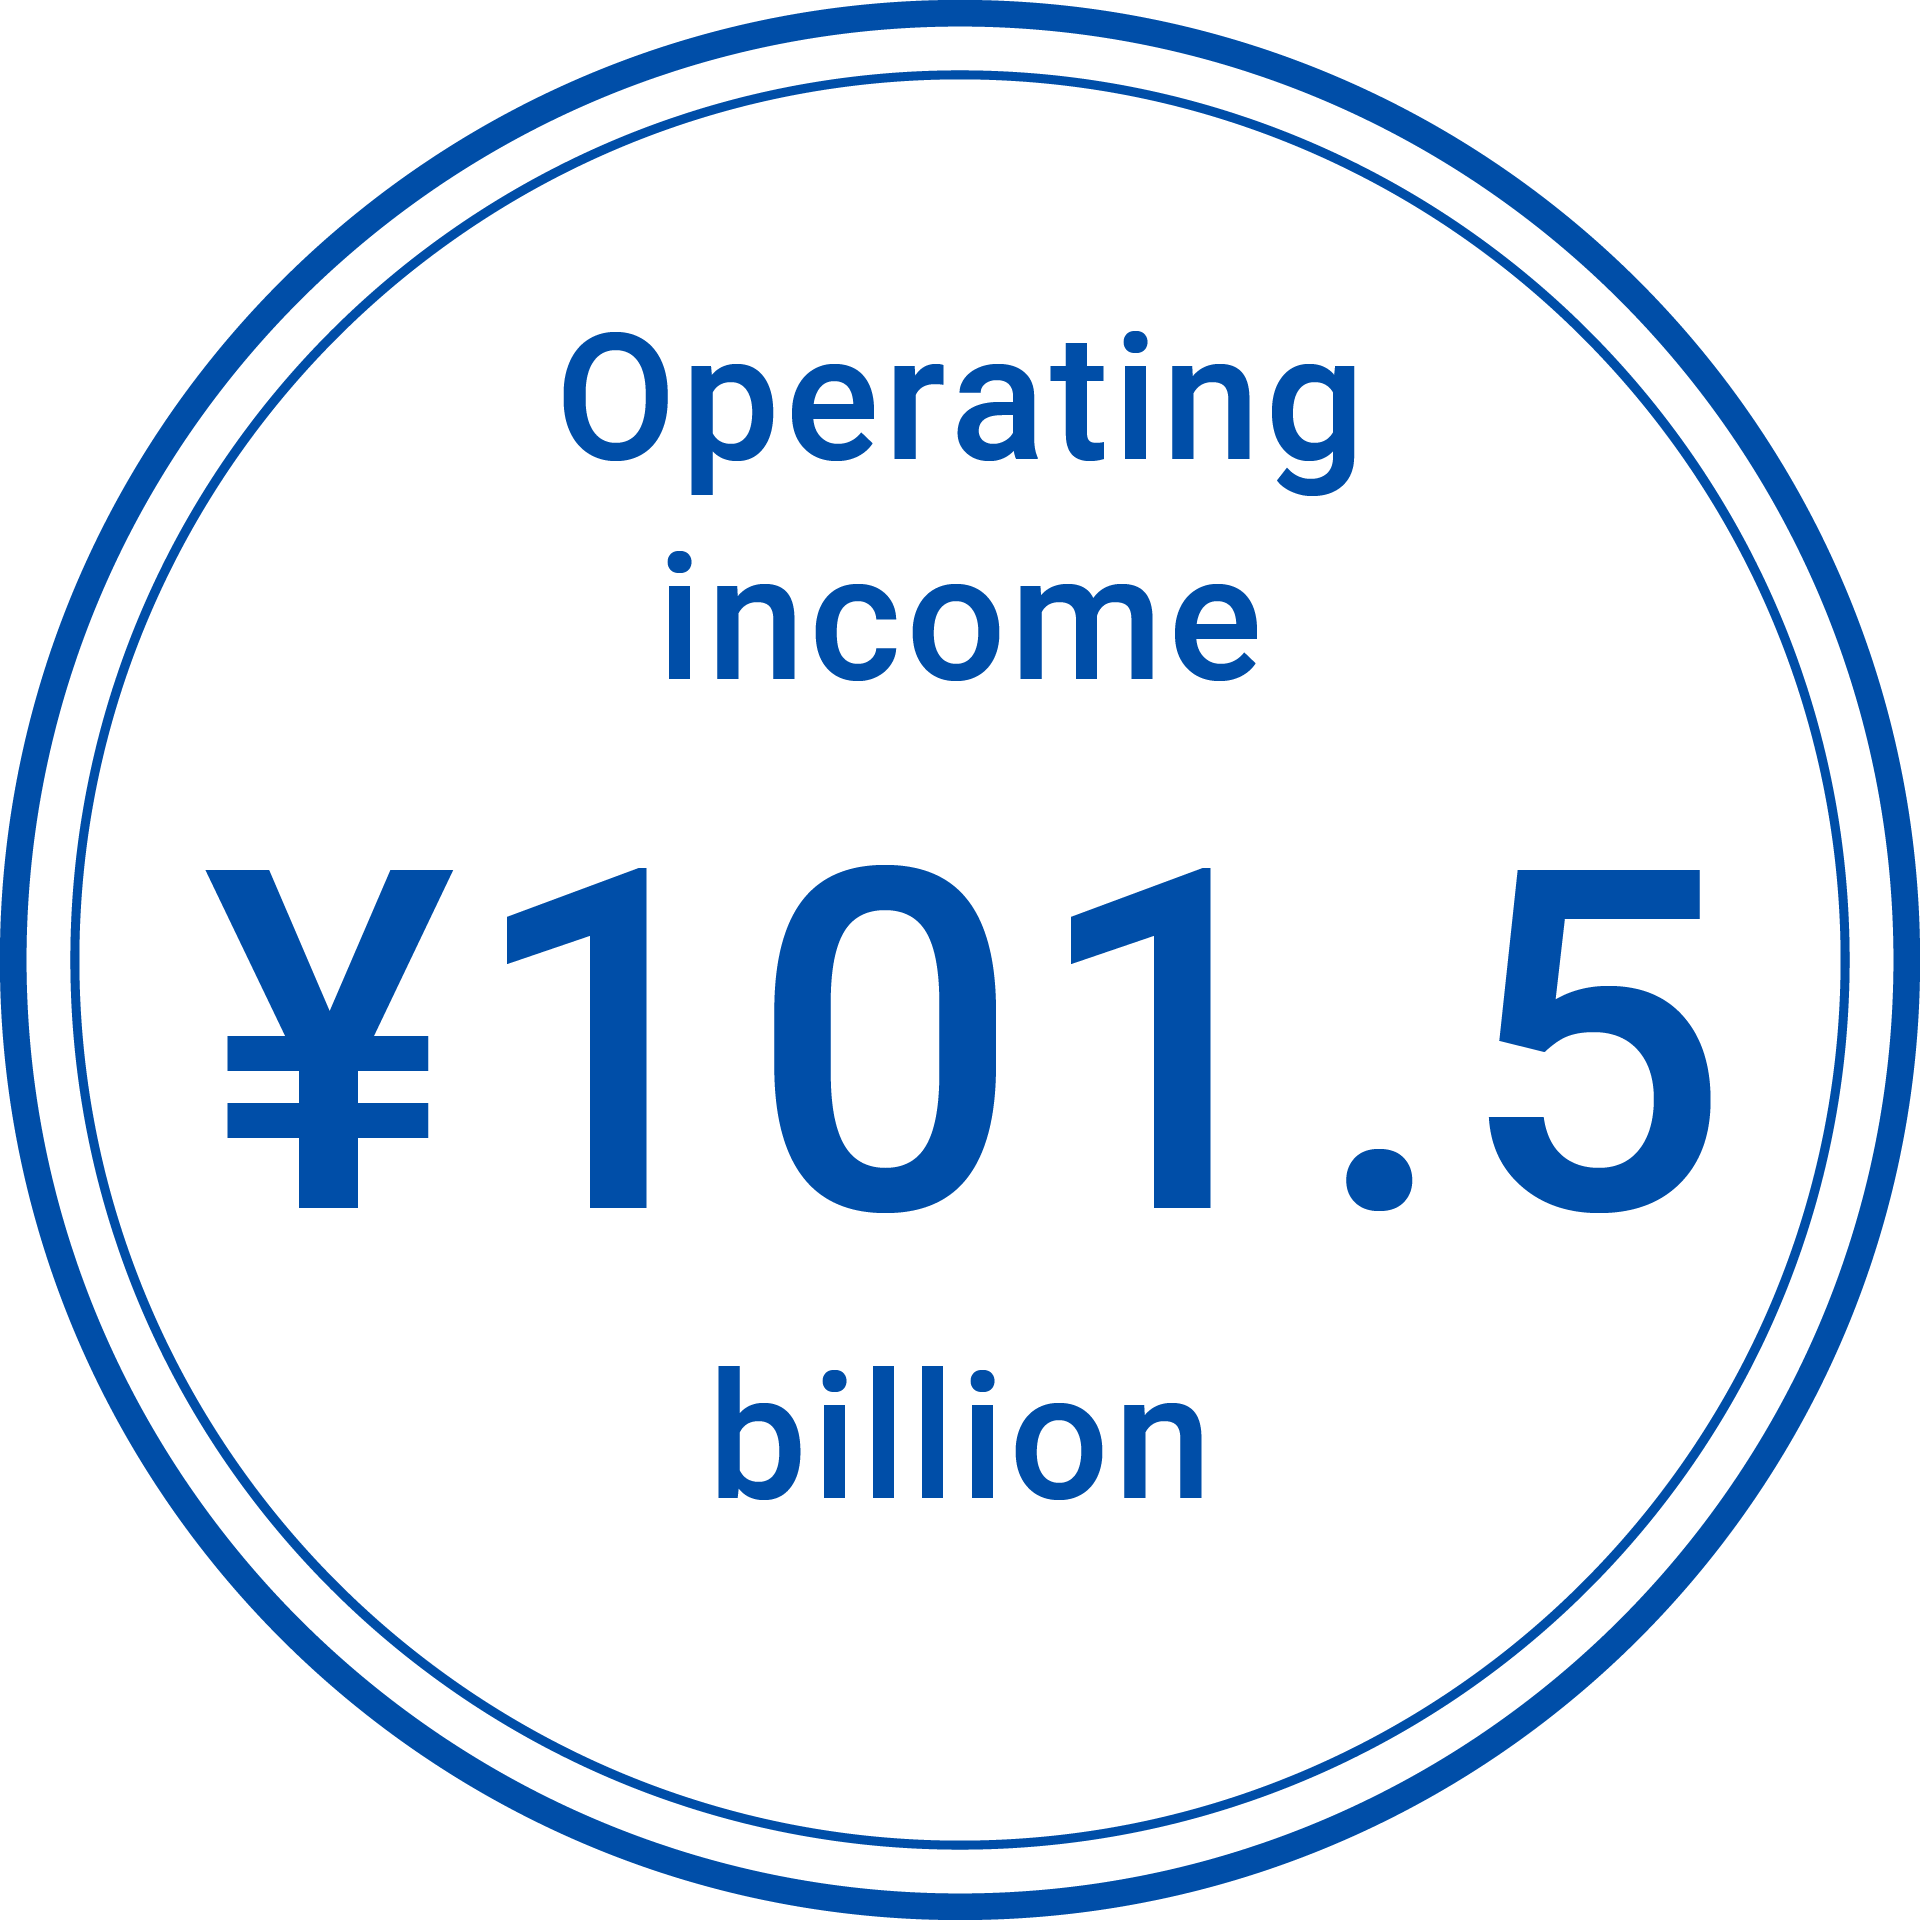 Operating income ¥101.5 billion